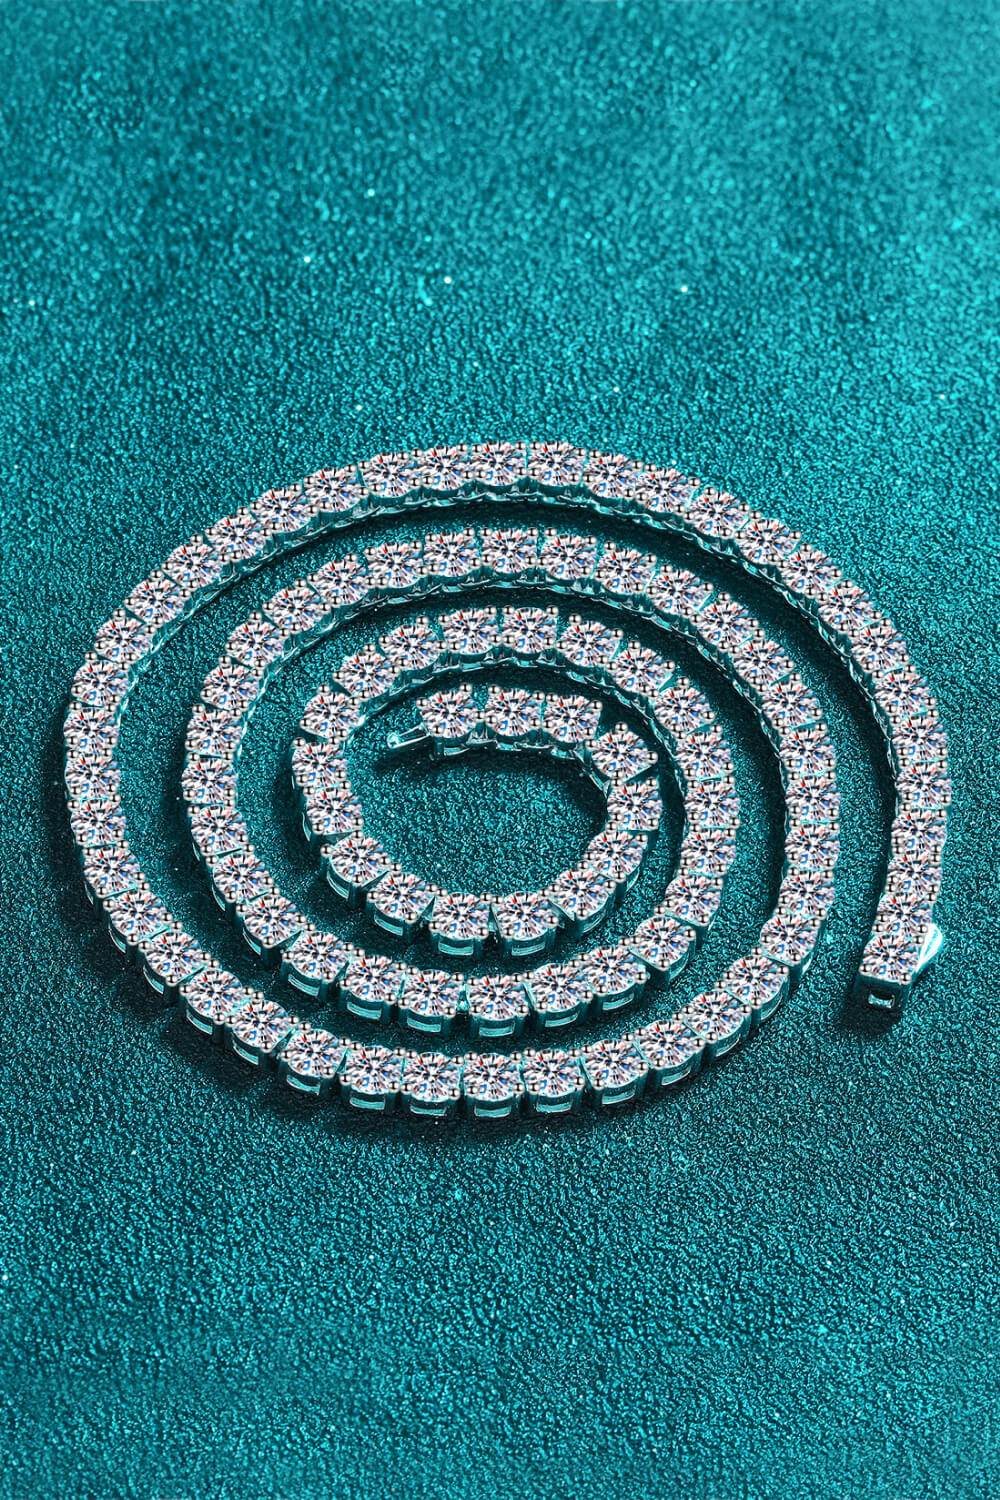 Moissanite Rhodium-Plated Necklace - DromedarShop.com Online Boutique